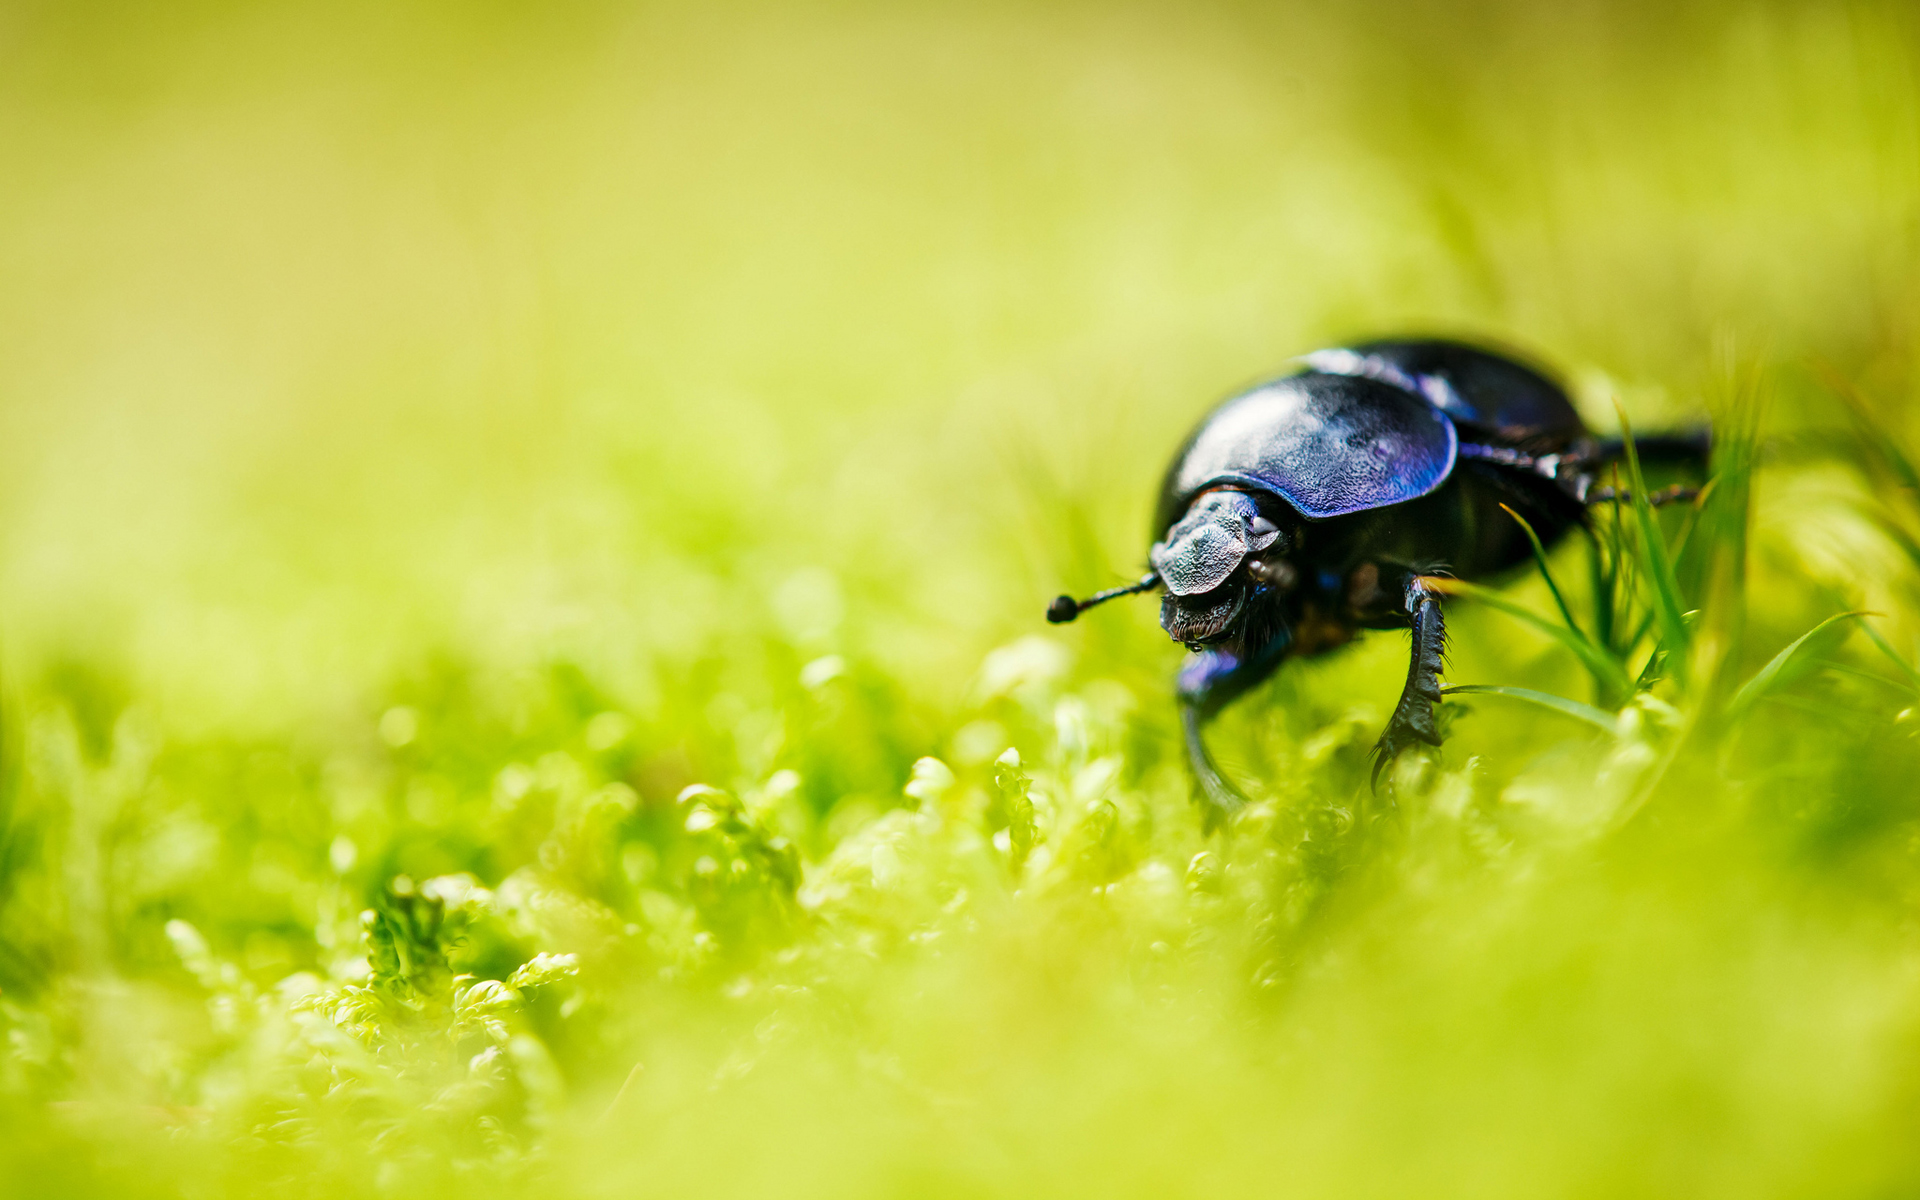 Blurred Grass Bug Wallpaper